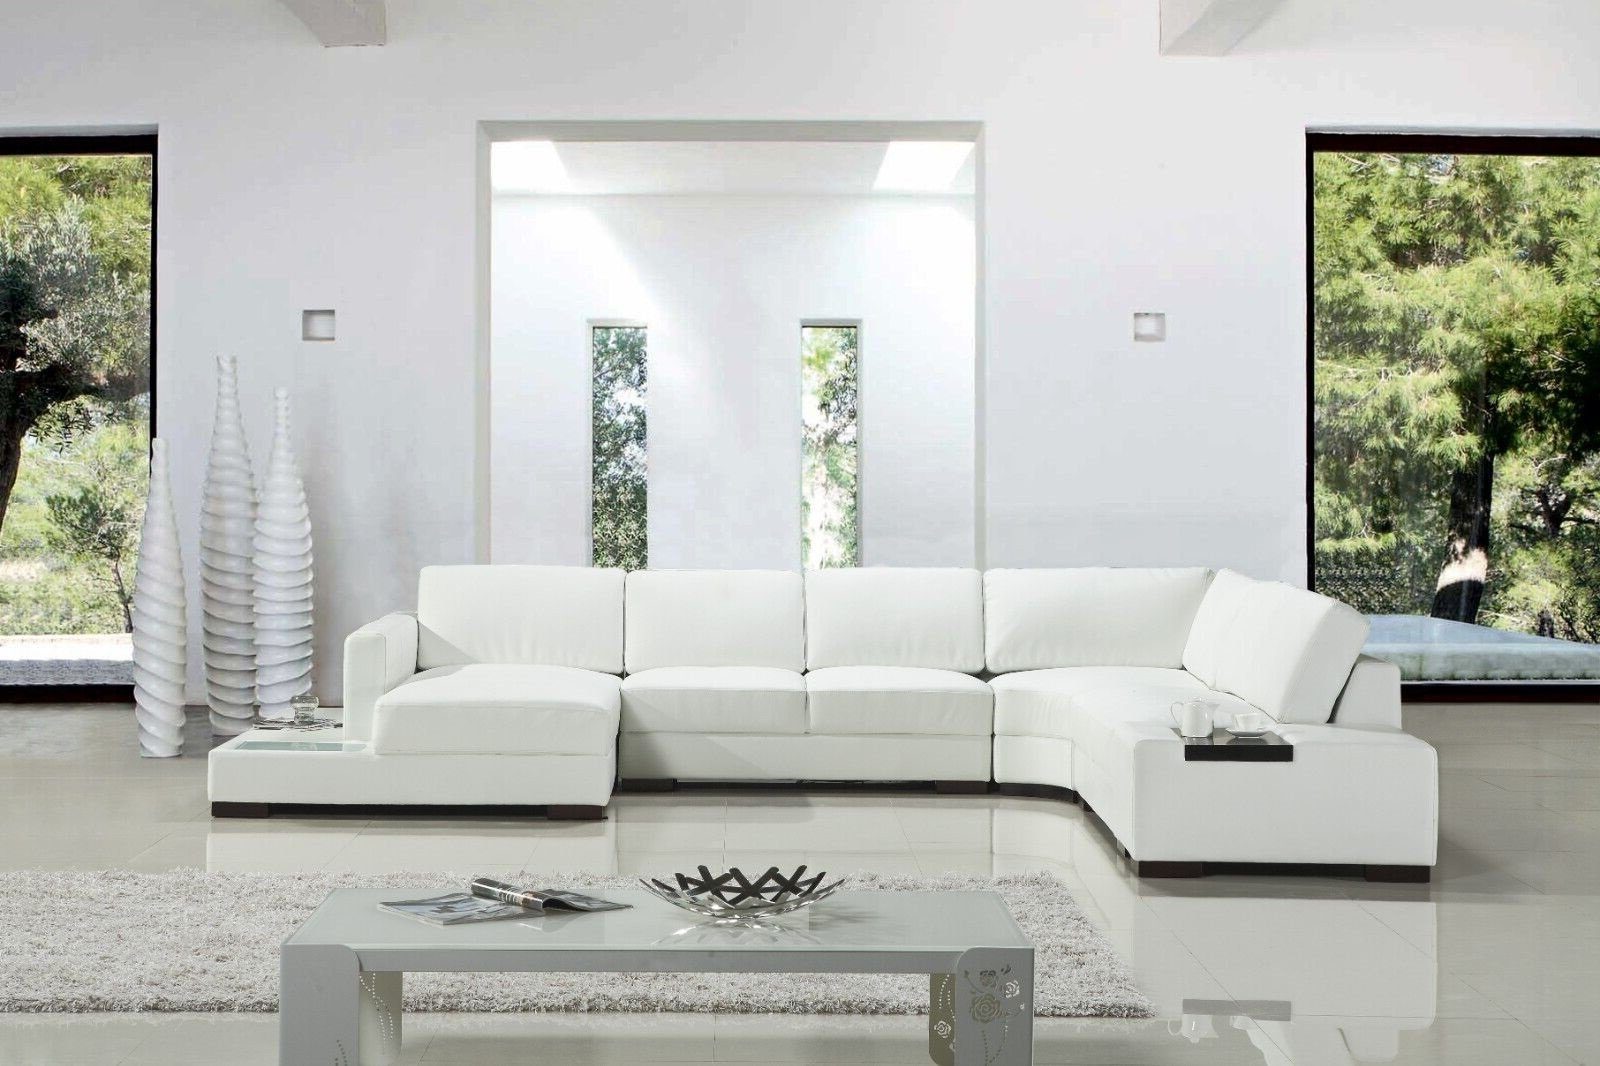 JVmoebel Ecksofa Wohnzimmer Made Teile, in Modern 1 Weiß SOFORT, Ecksofa Luxus Europa U-Form Stil Sofa